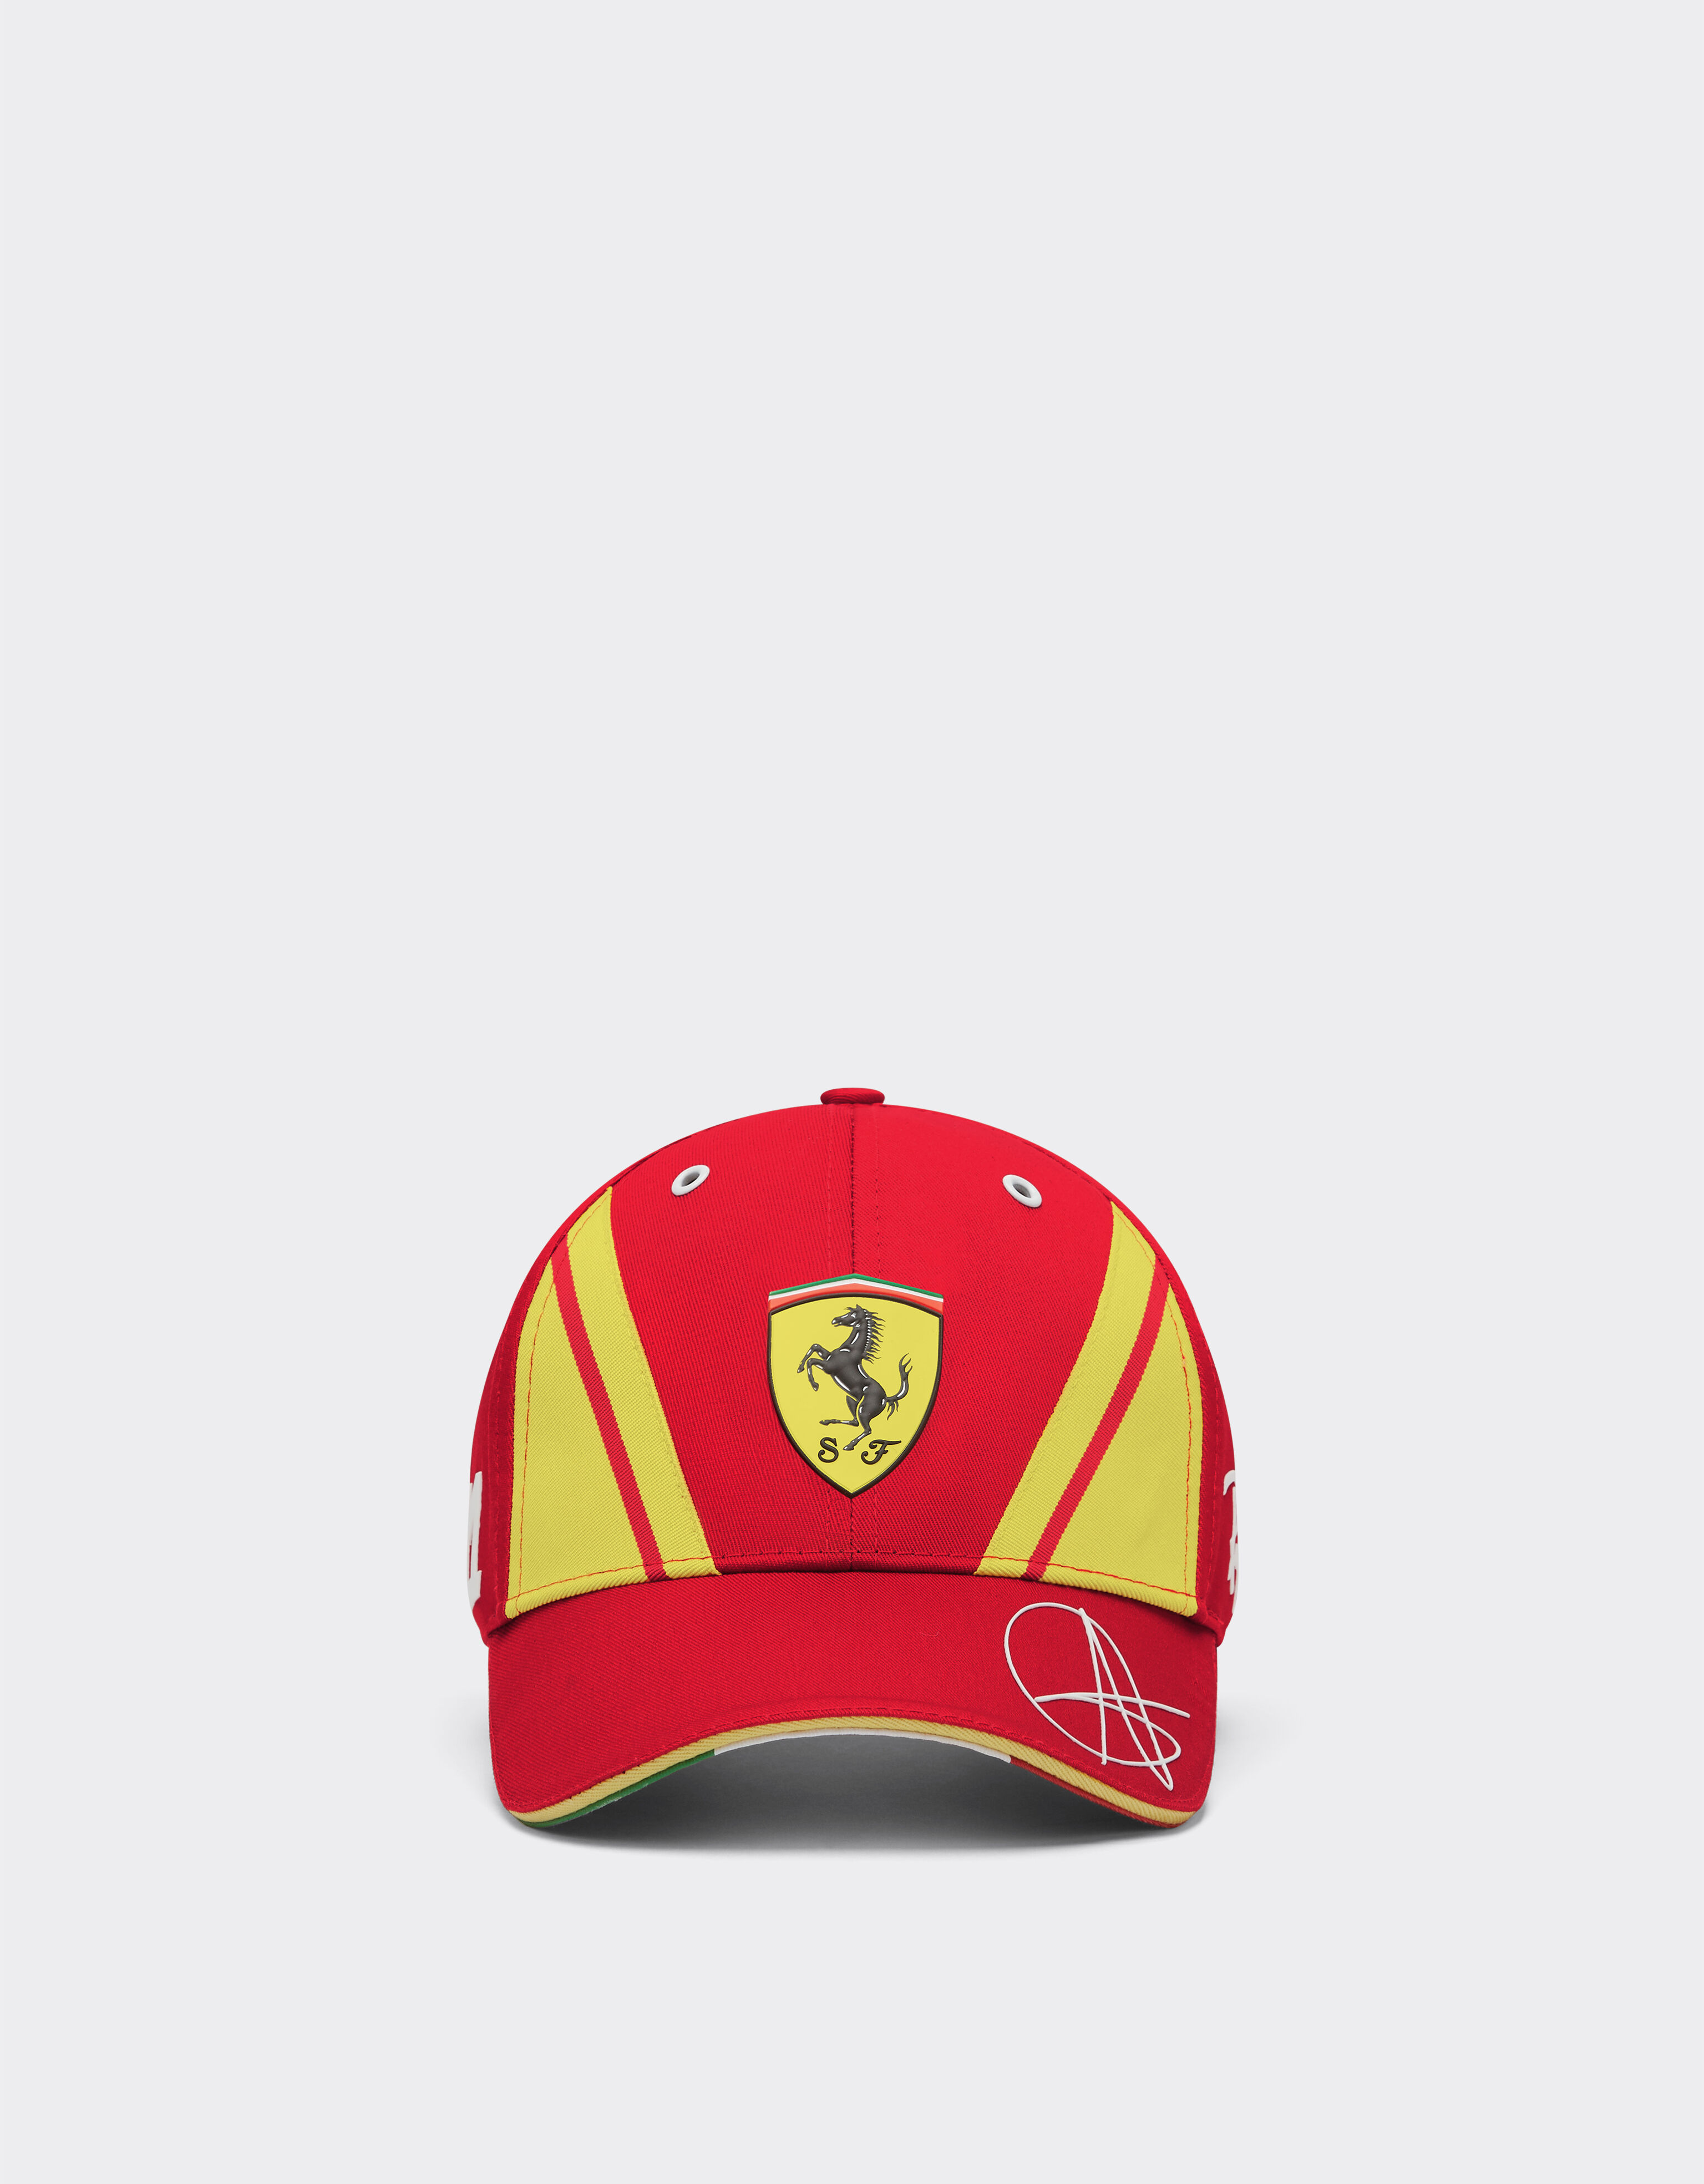 ${brand} Gorra Giovinazzi Ferrari Hypercar - Edición limitada ${colorDescription} ${masterID}